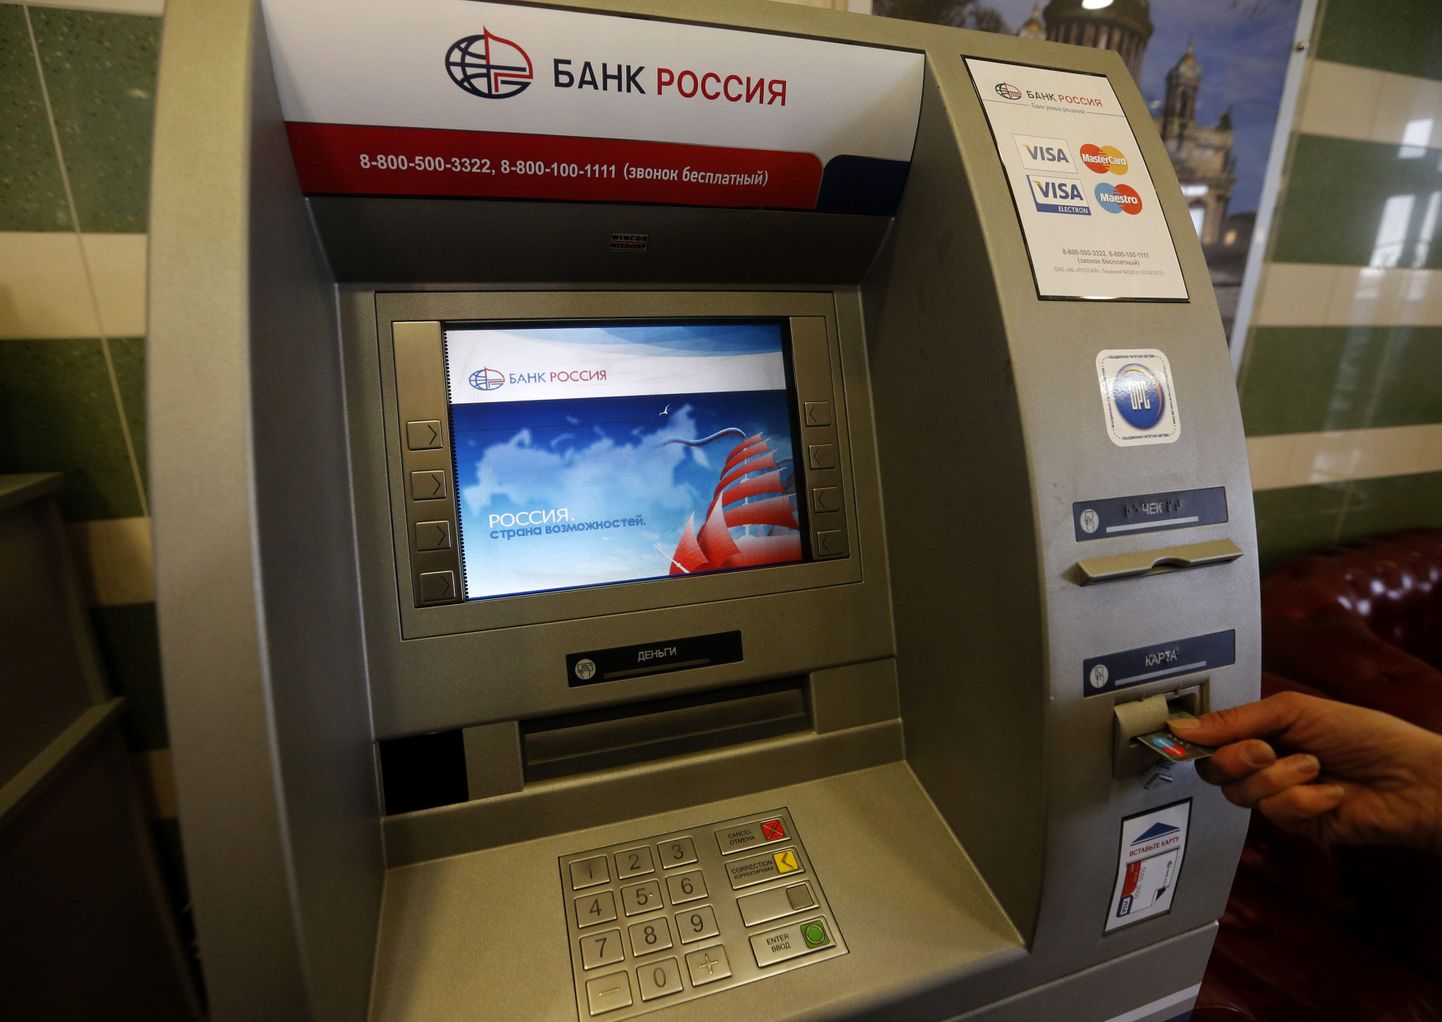 Reedest alates polnud Vene Mastercardi ja Visa omanikel võimalust ei SMP ega Rossija pangast kaardiga raha välja võtta. Nüüd on SMP panga puhul teenus taastatud.